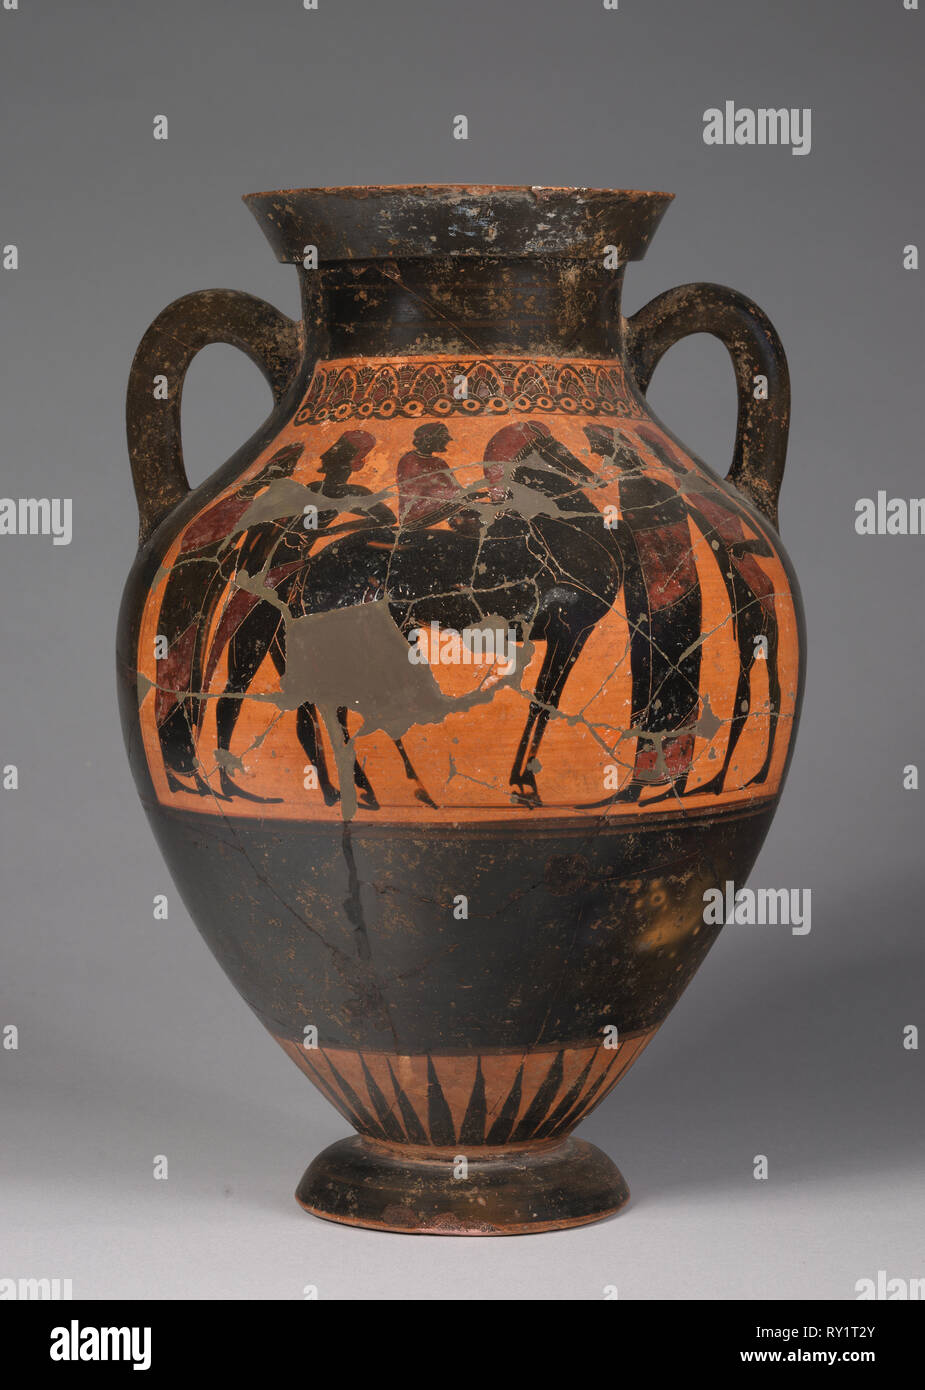 Antico e Grande Vaso da notte XIX secolo in Terracotta / Ceramica